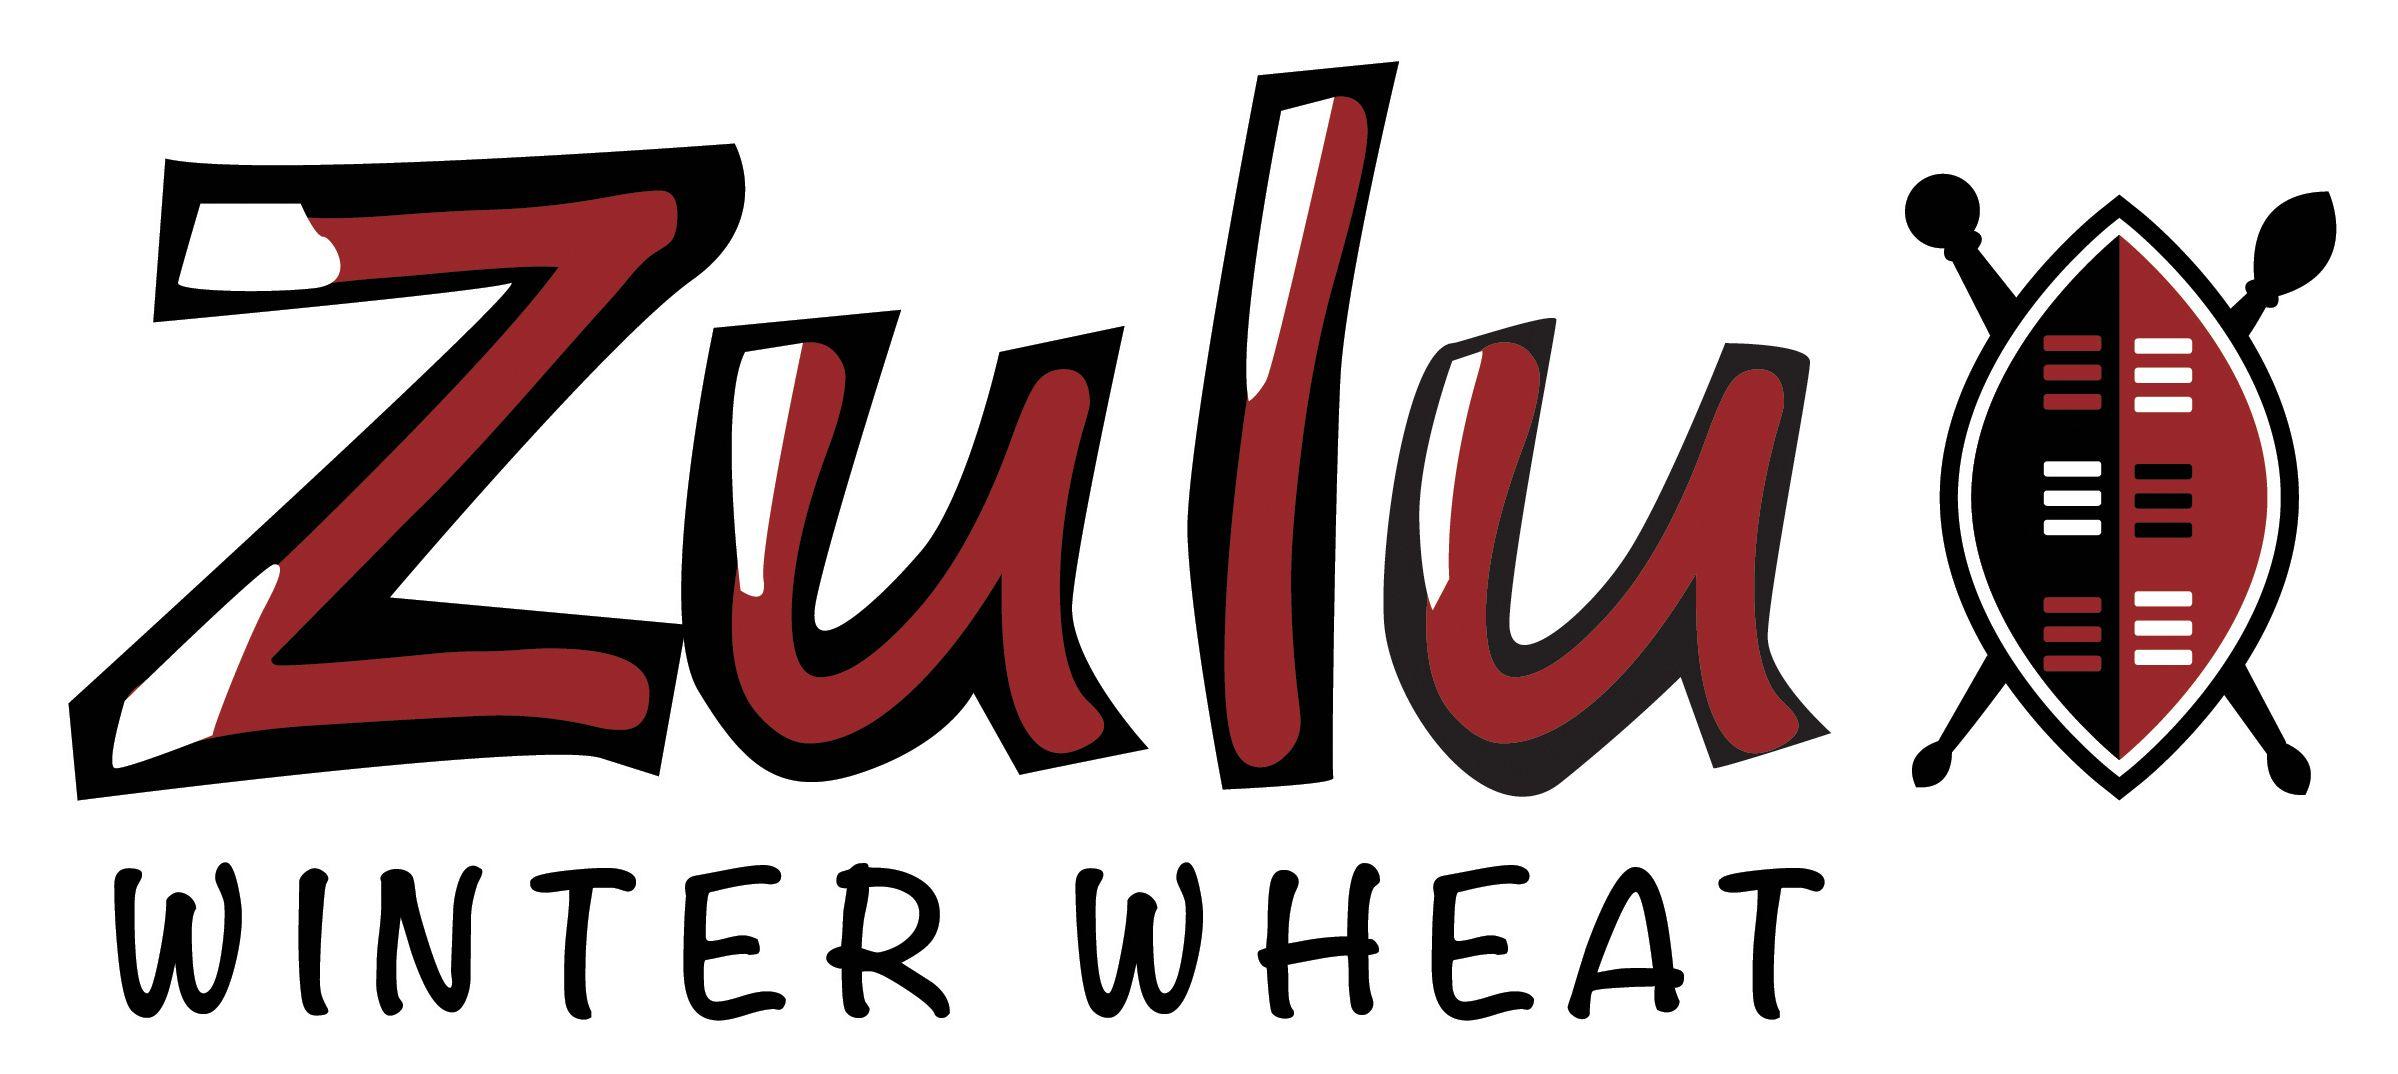 Zulu Logo - Zulu. Group 3 Winter Wheat Cereal. LG Seeds UK